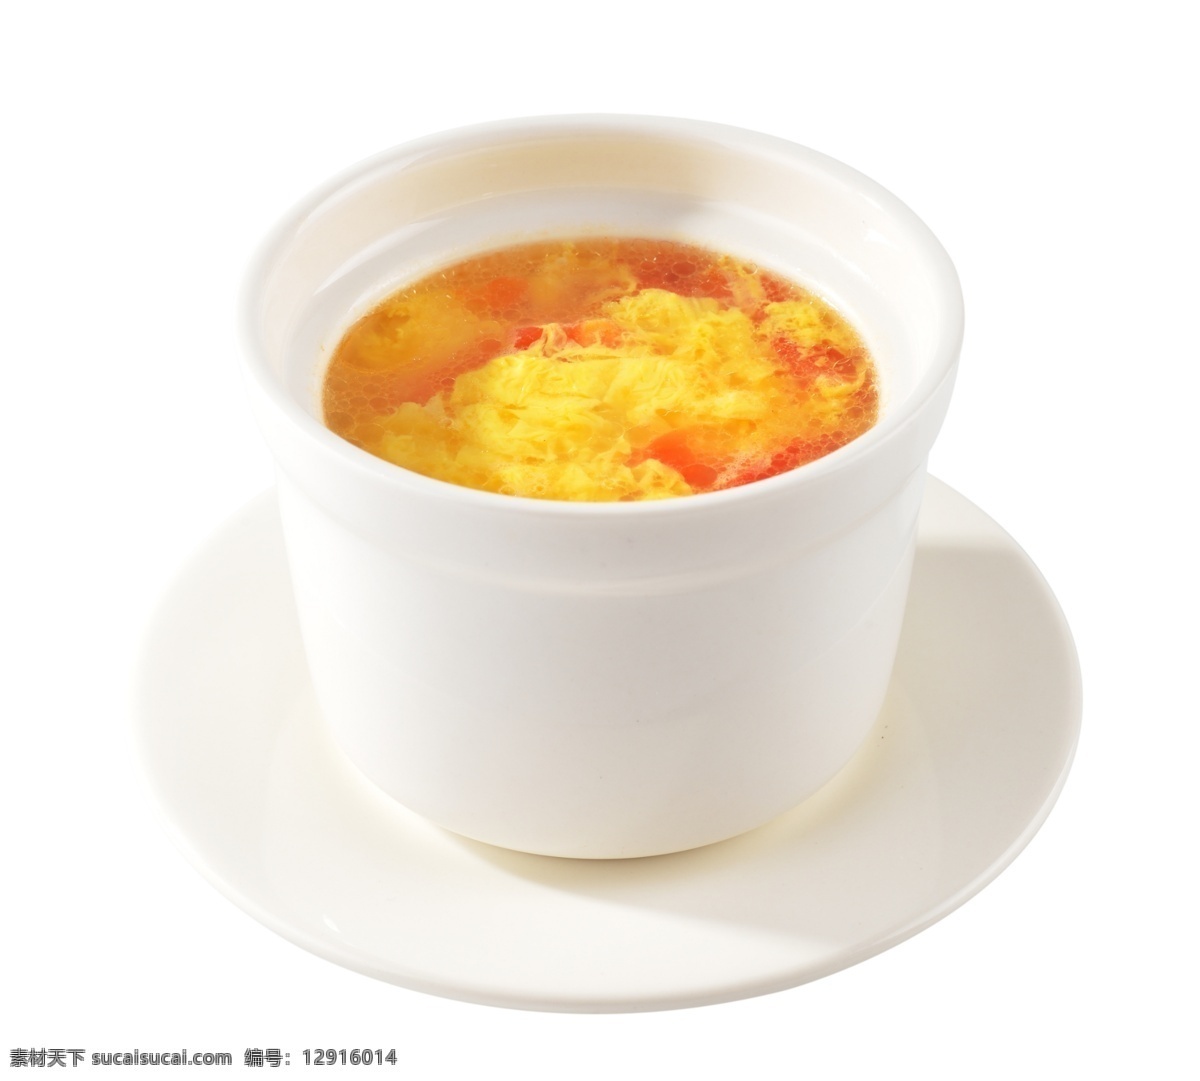 番茄蛋汤 汤碗 汤盅 瓷碗 瓷杯 白色 汤 蛋汤 番茄 鸡蛋 蛋花 例汤 蒸汤 分层